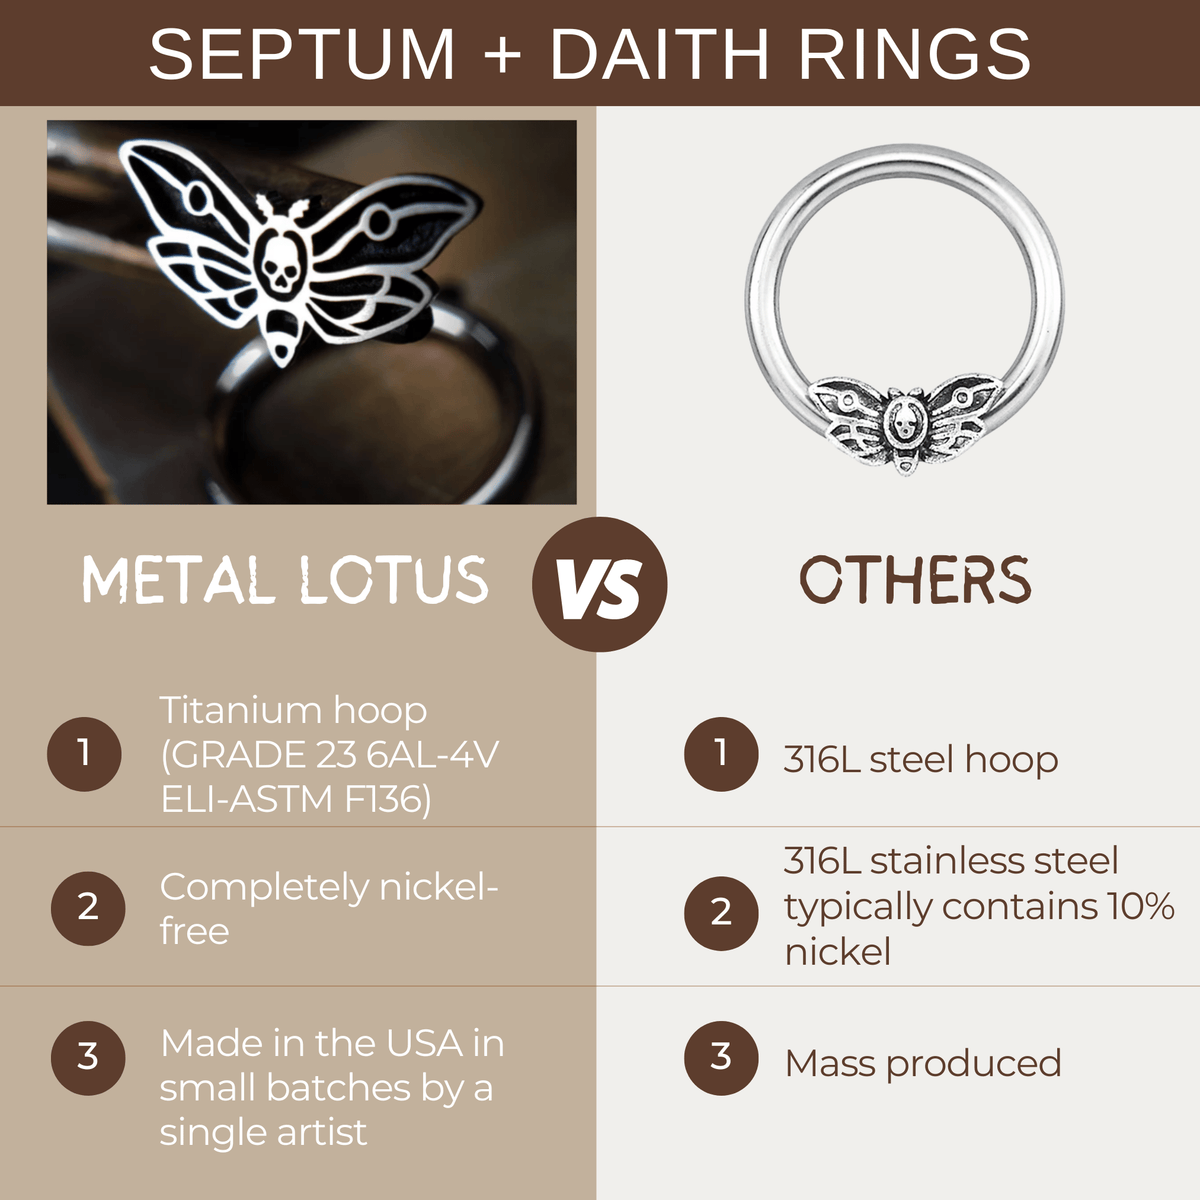 Raven Septum + Daith Ring - Metal Lotus